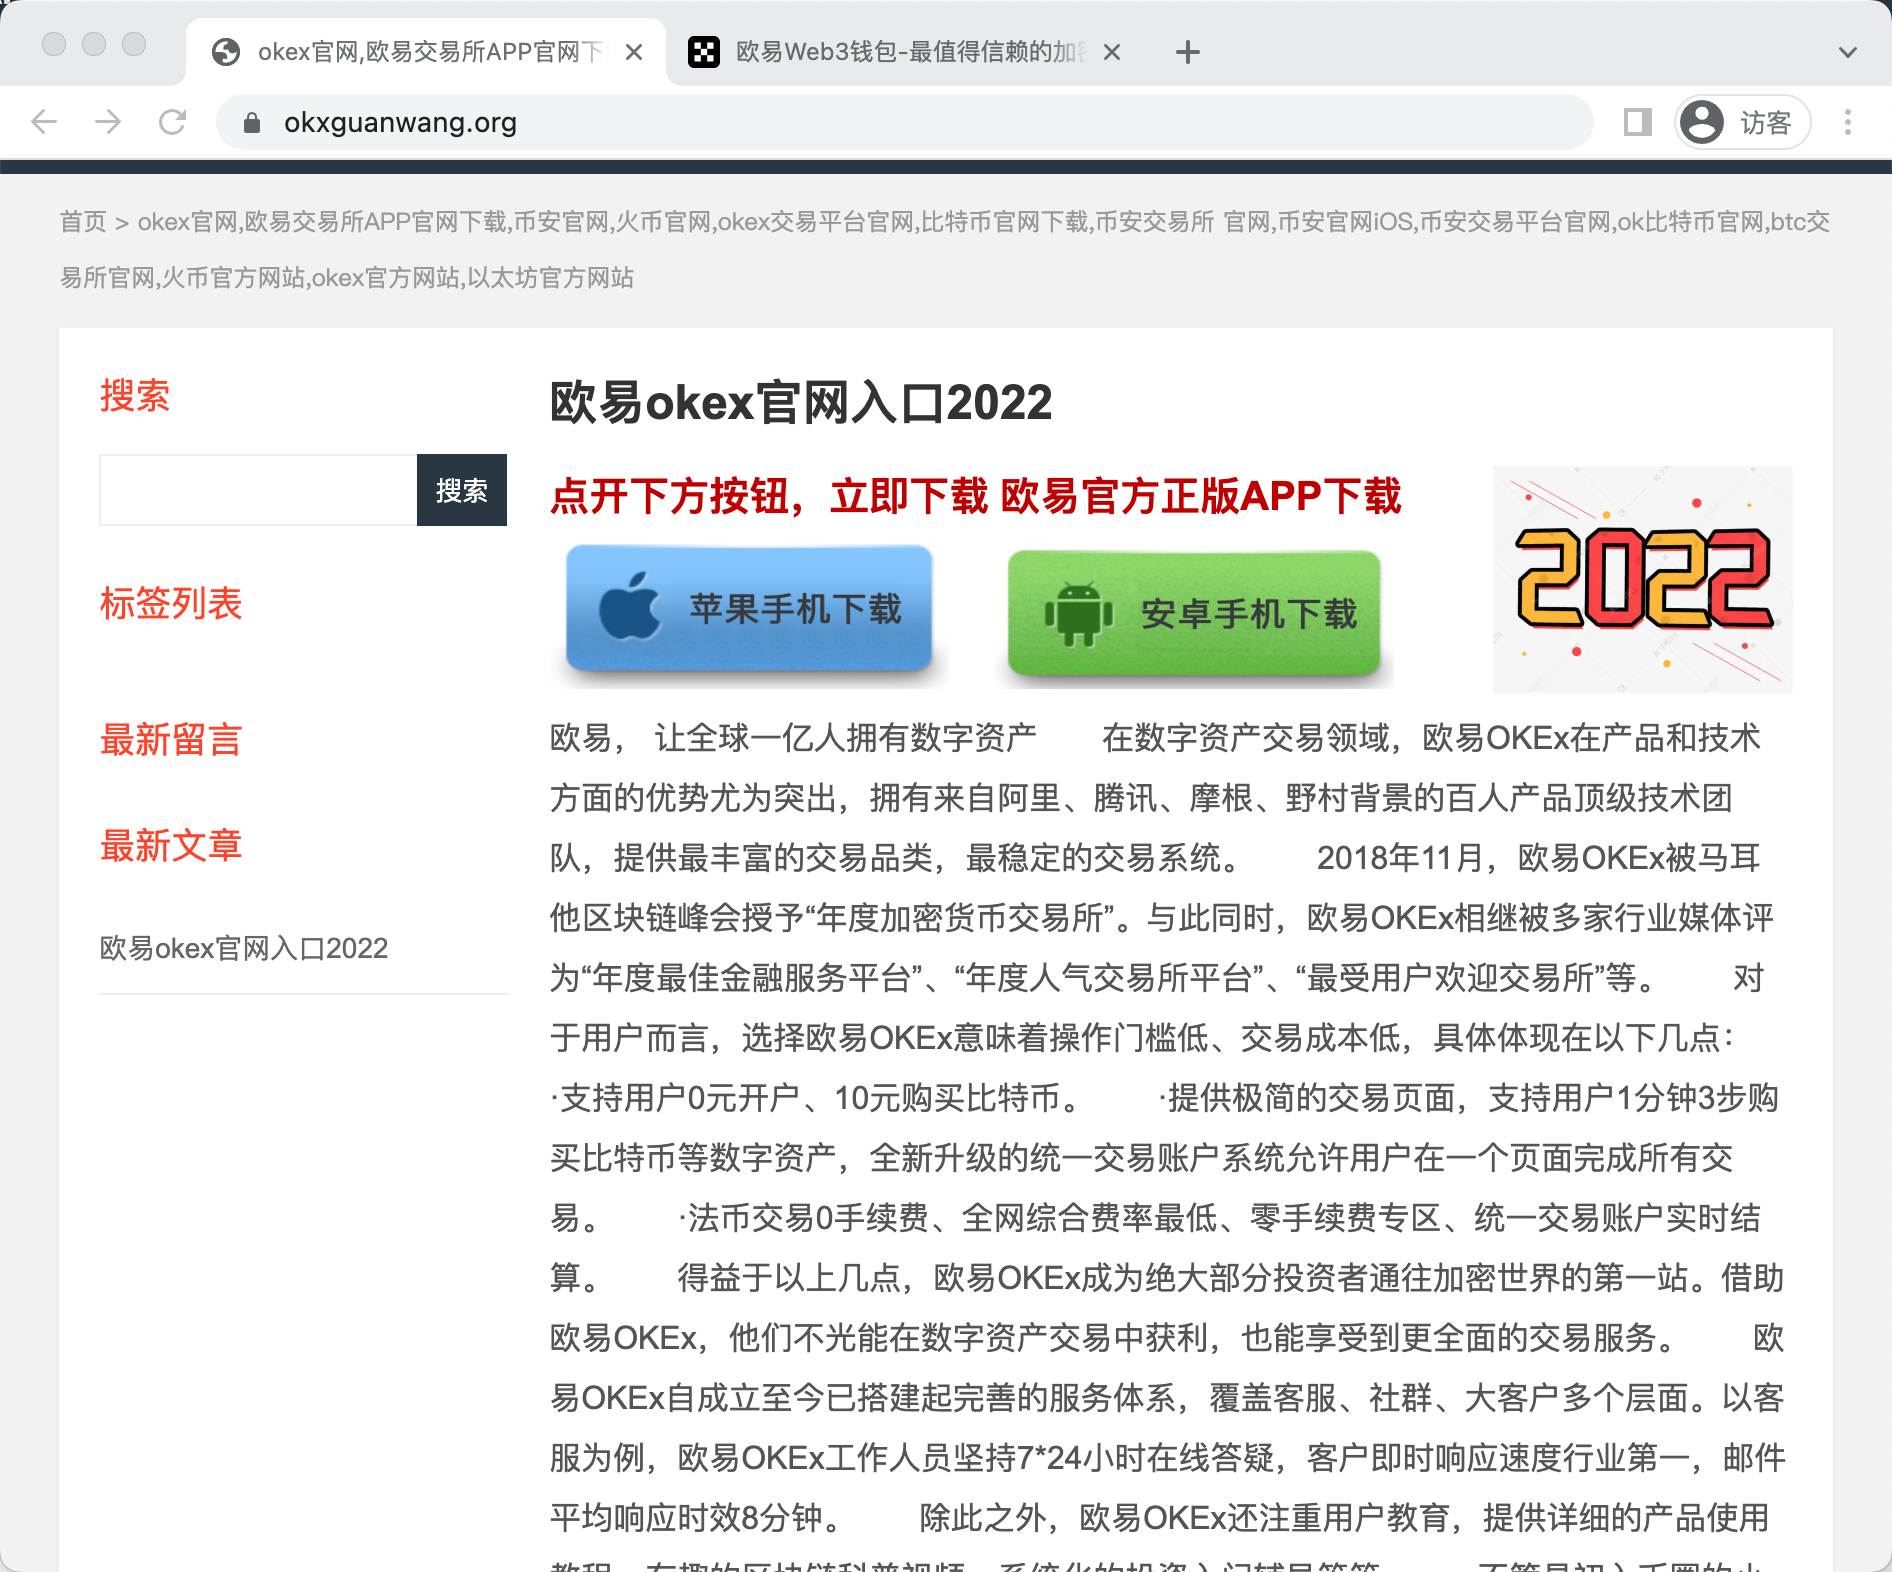 加了guanwang后缀顶级域名是org的钓鱼网站